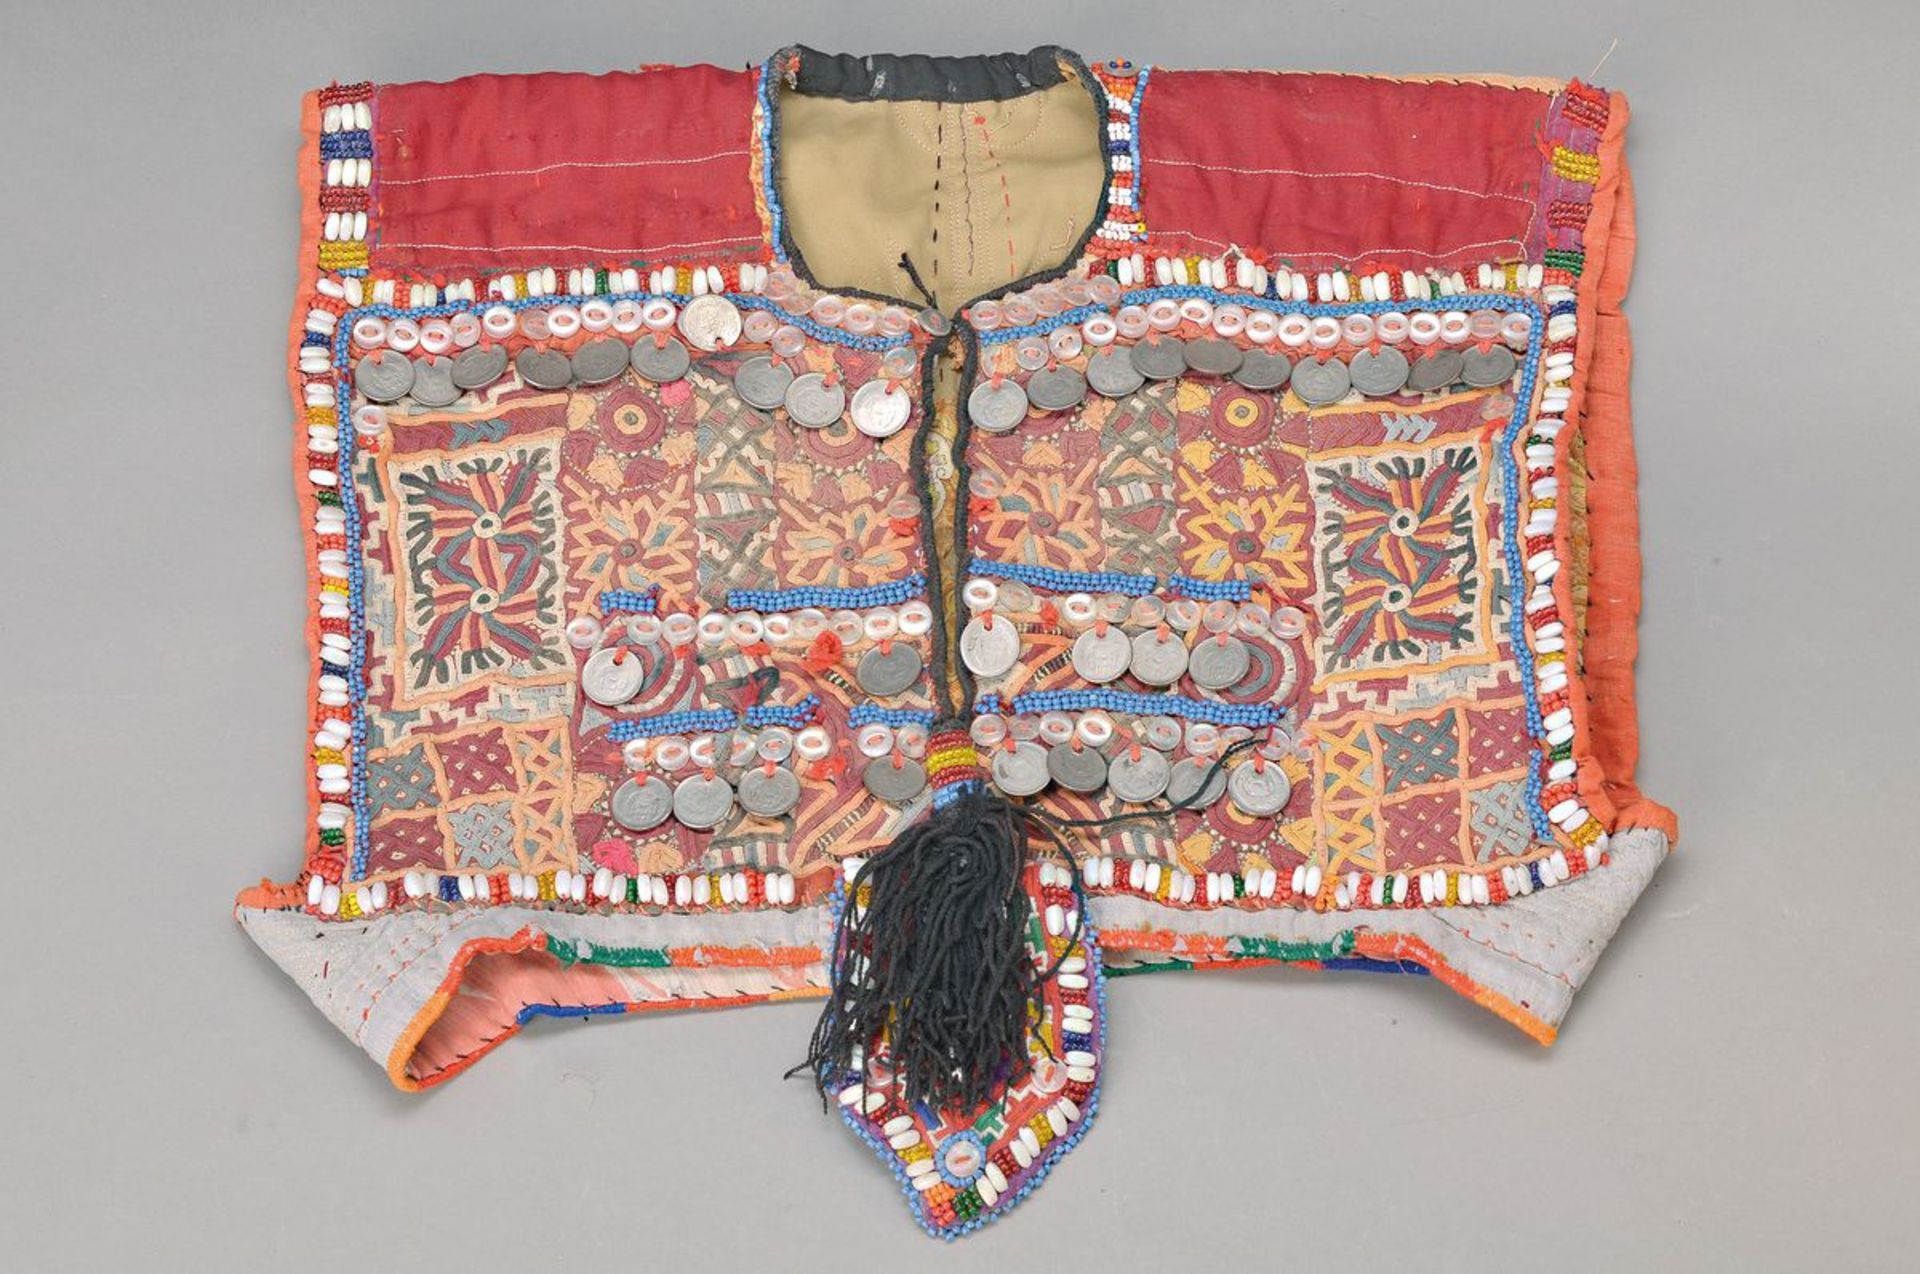 Kinder-Zeremonialkleid der Turkmenen, Zentralasien, 19. Jh., diese Kleidchen gelten als Schutz vor